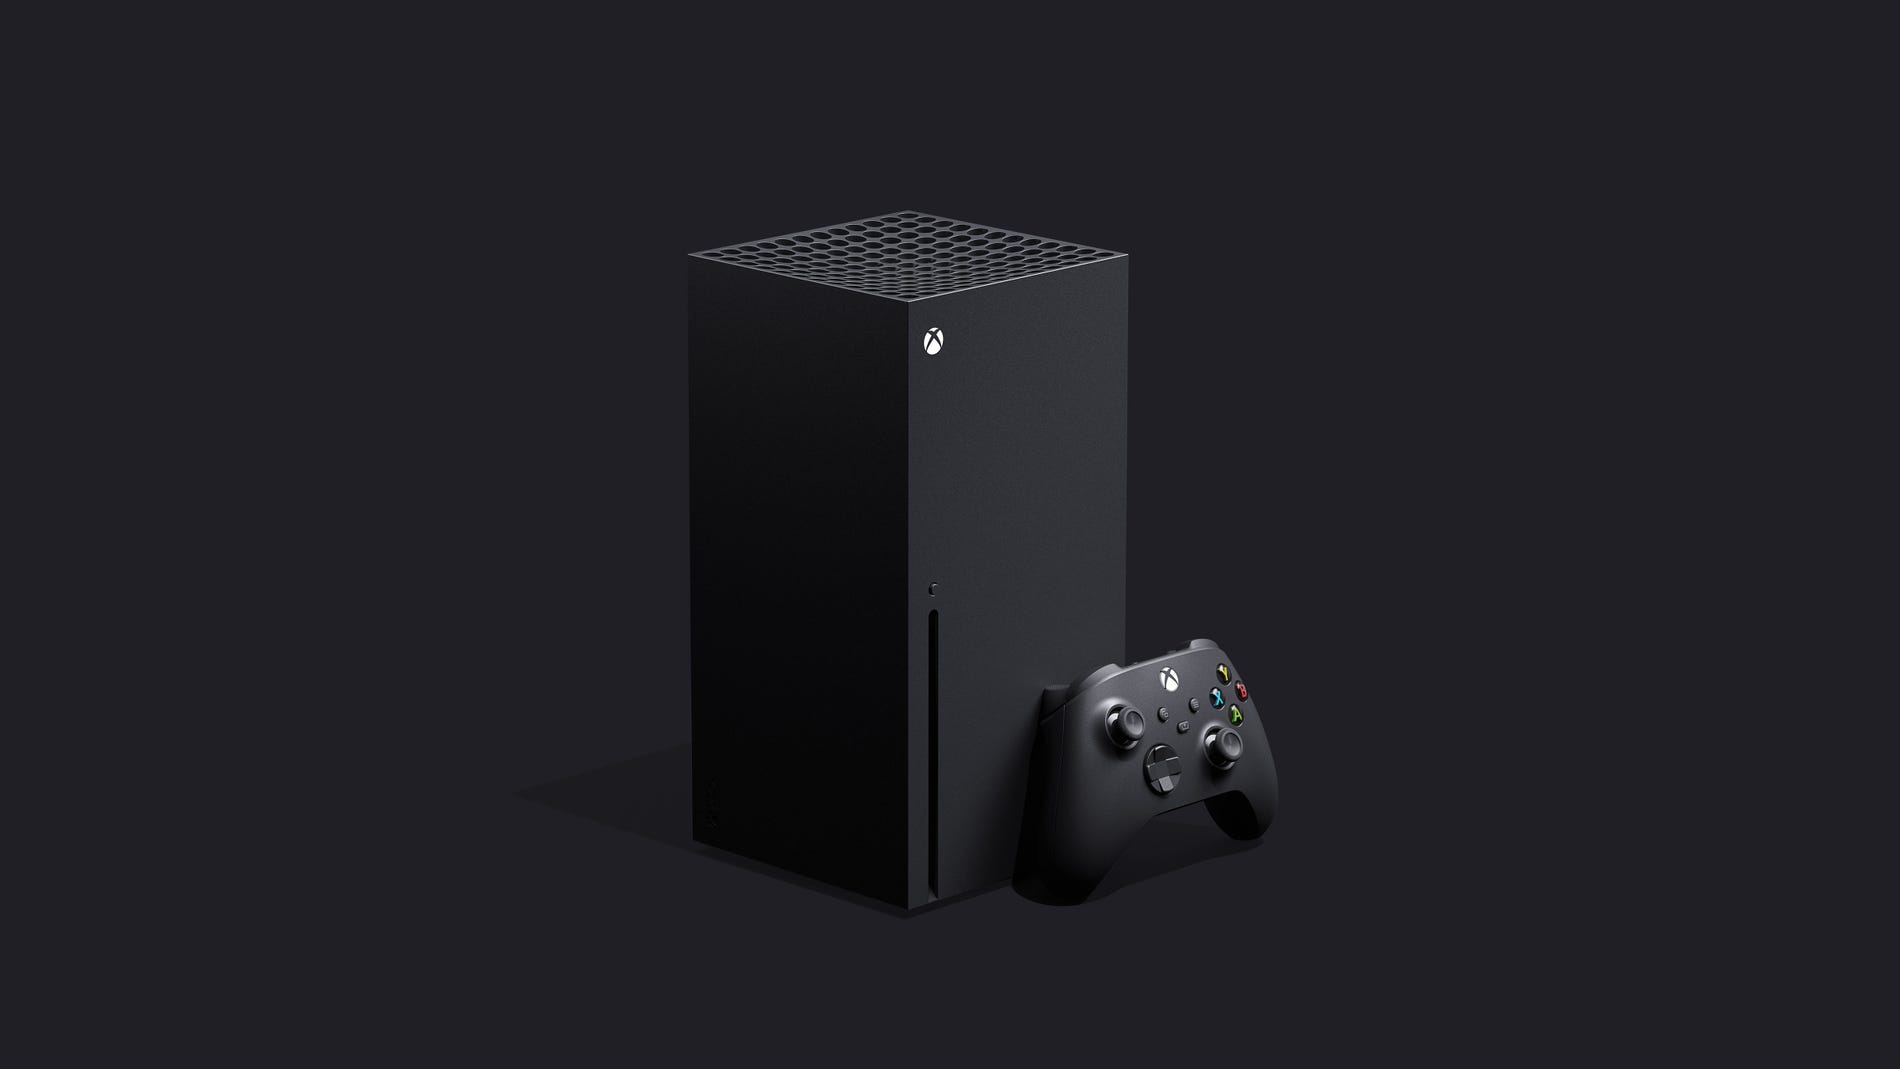 Immagine pubblicata in relazione al seguente contenuto: Microsoft chiarisce che la sua console di nuova generazione si chiamer Xbox | Nome immagine: news30270_Xbox-Next-Gen_1.jpg